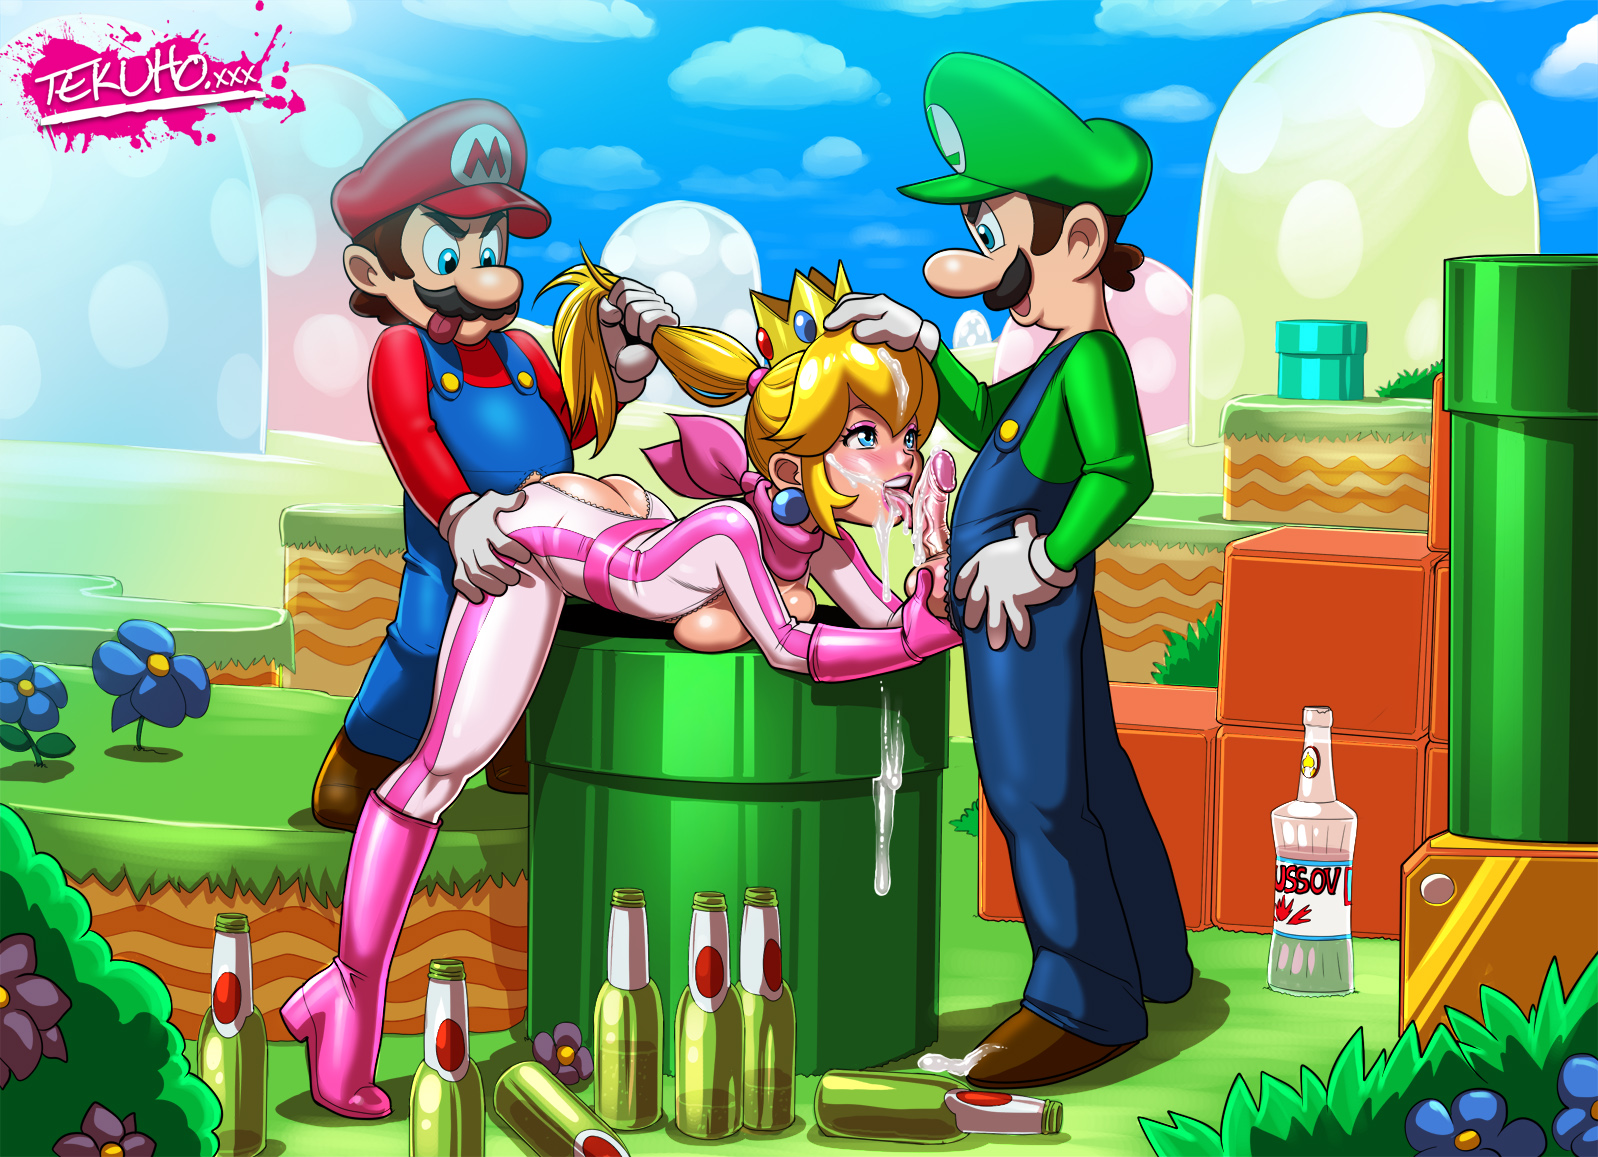 Princess Peach Porn Animated Cartoons - Mario x peach hentai - MegaPornX.com